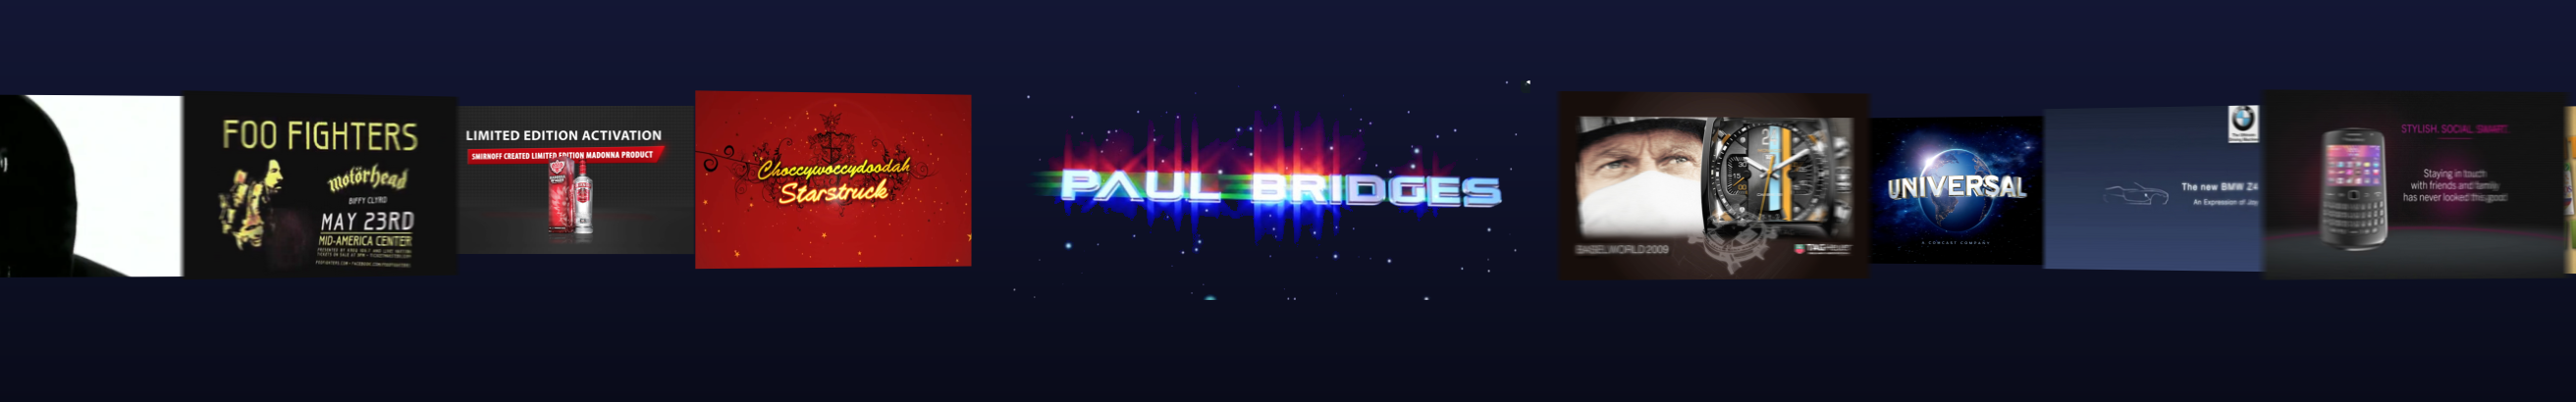 Paul Bridges 的个人资料横幅